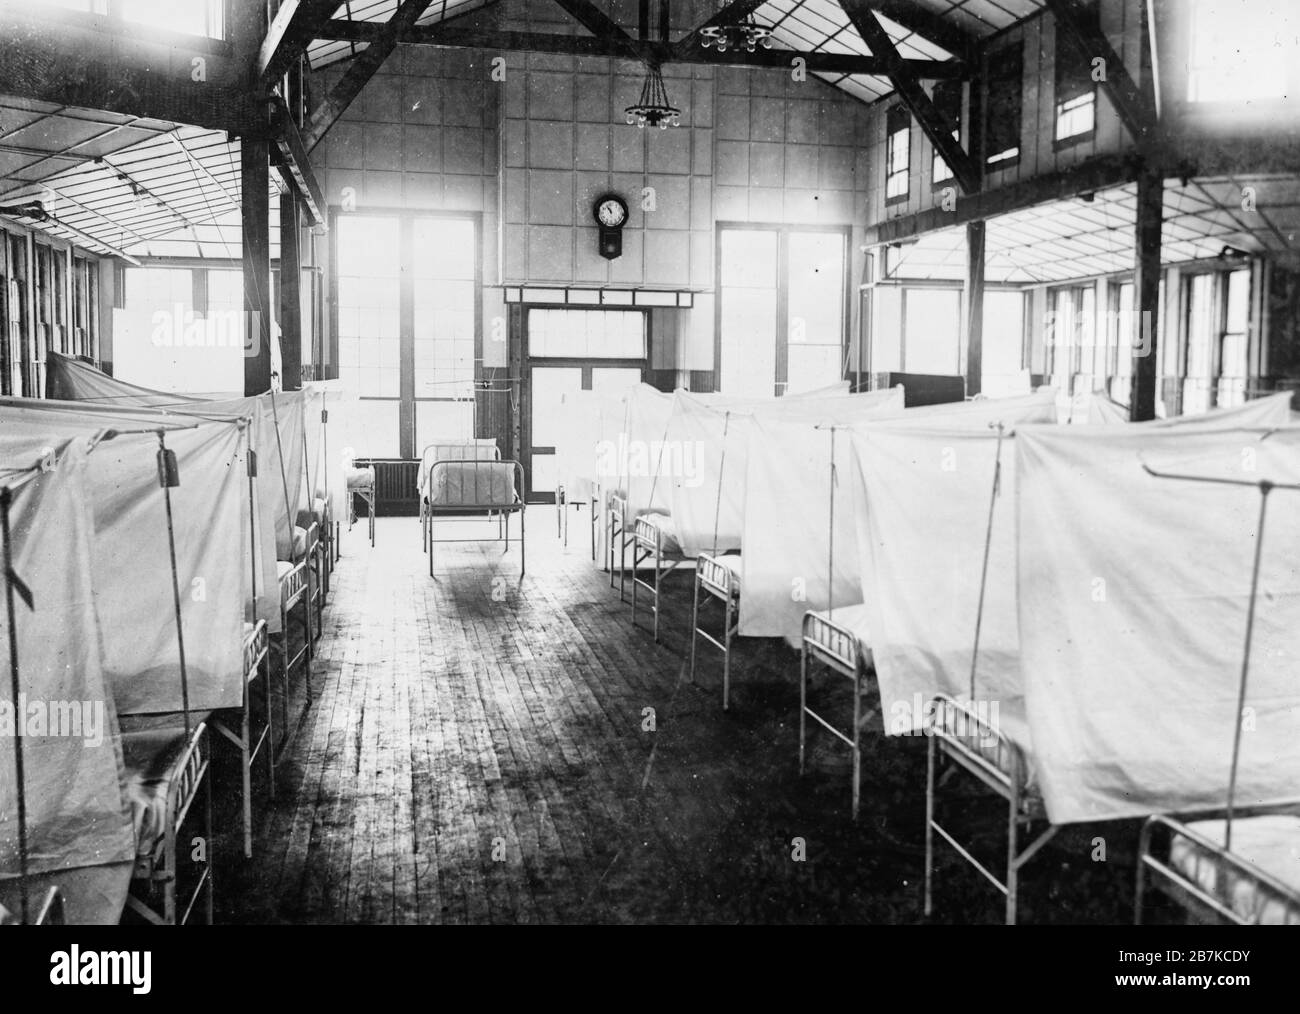 Interno della Casa della Croce Rossa al U.S. General Hospital n. 16, New Haven, Conn. Durante l'epidemia di influenza. I letti sono isolati da tende, circa 1918 Foto Stock